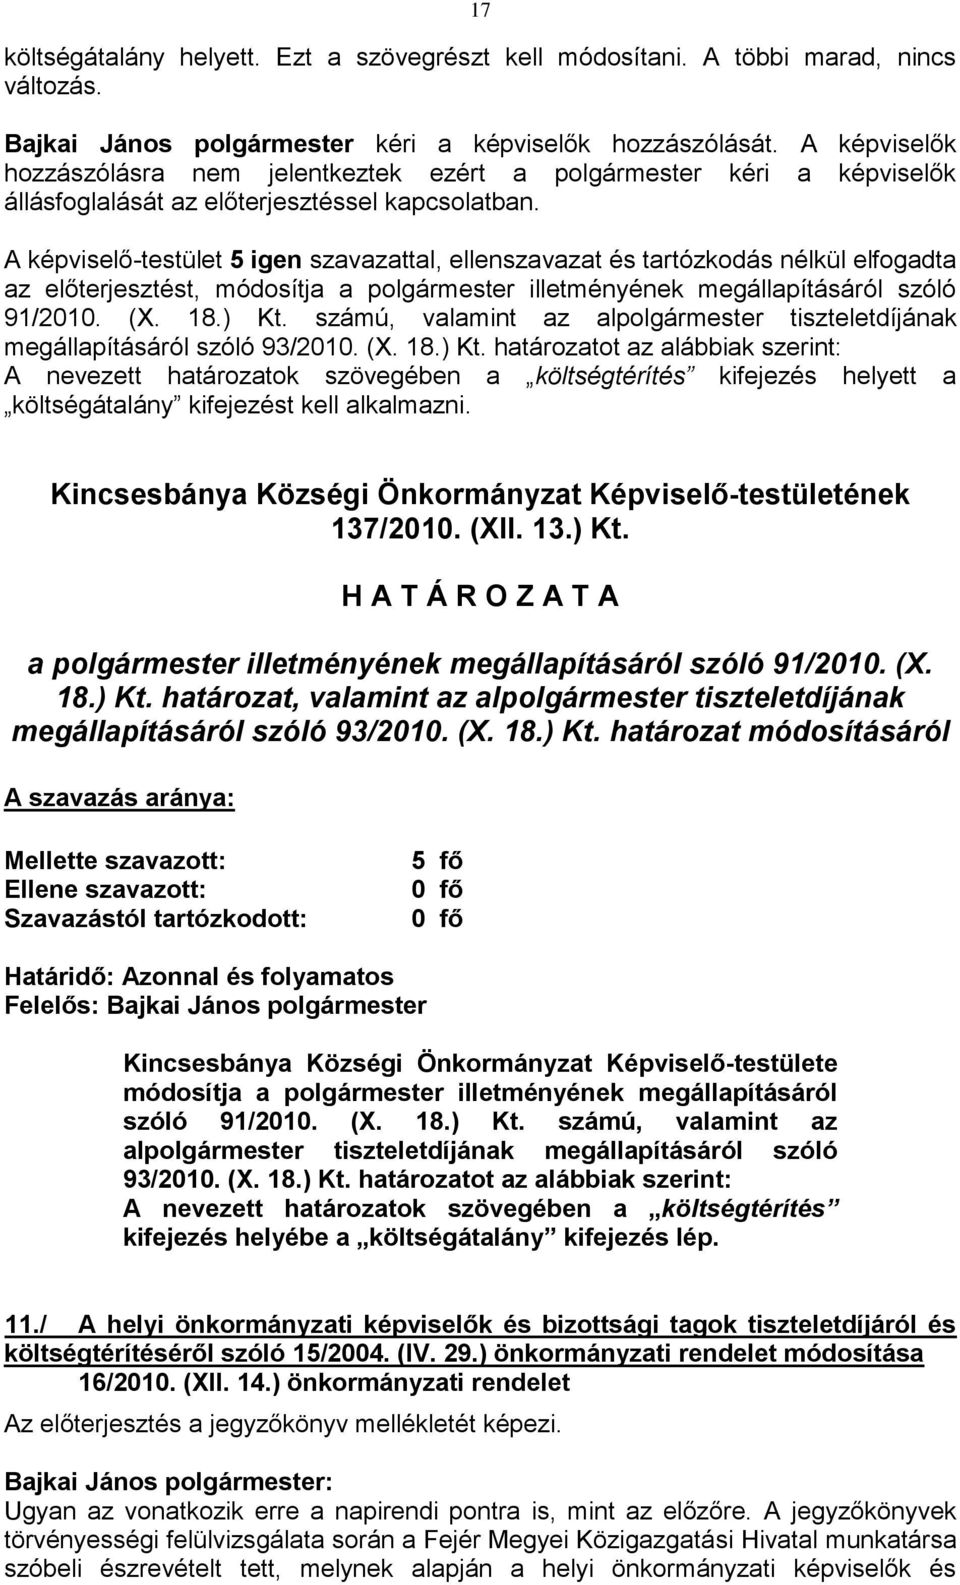 A képviselő-testület 5 igen szavazattal, ellenszavazat és tartózkodás nélkül elfogadta az előterjesztést, módosítja a polgármester illetményének megállapításáról szóló 91/2010. (X. 18.) Kt.